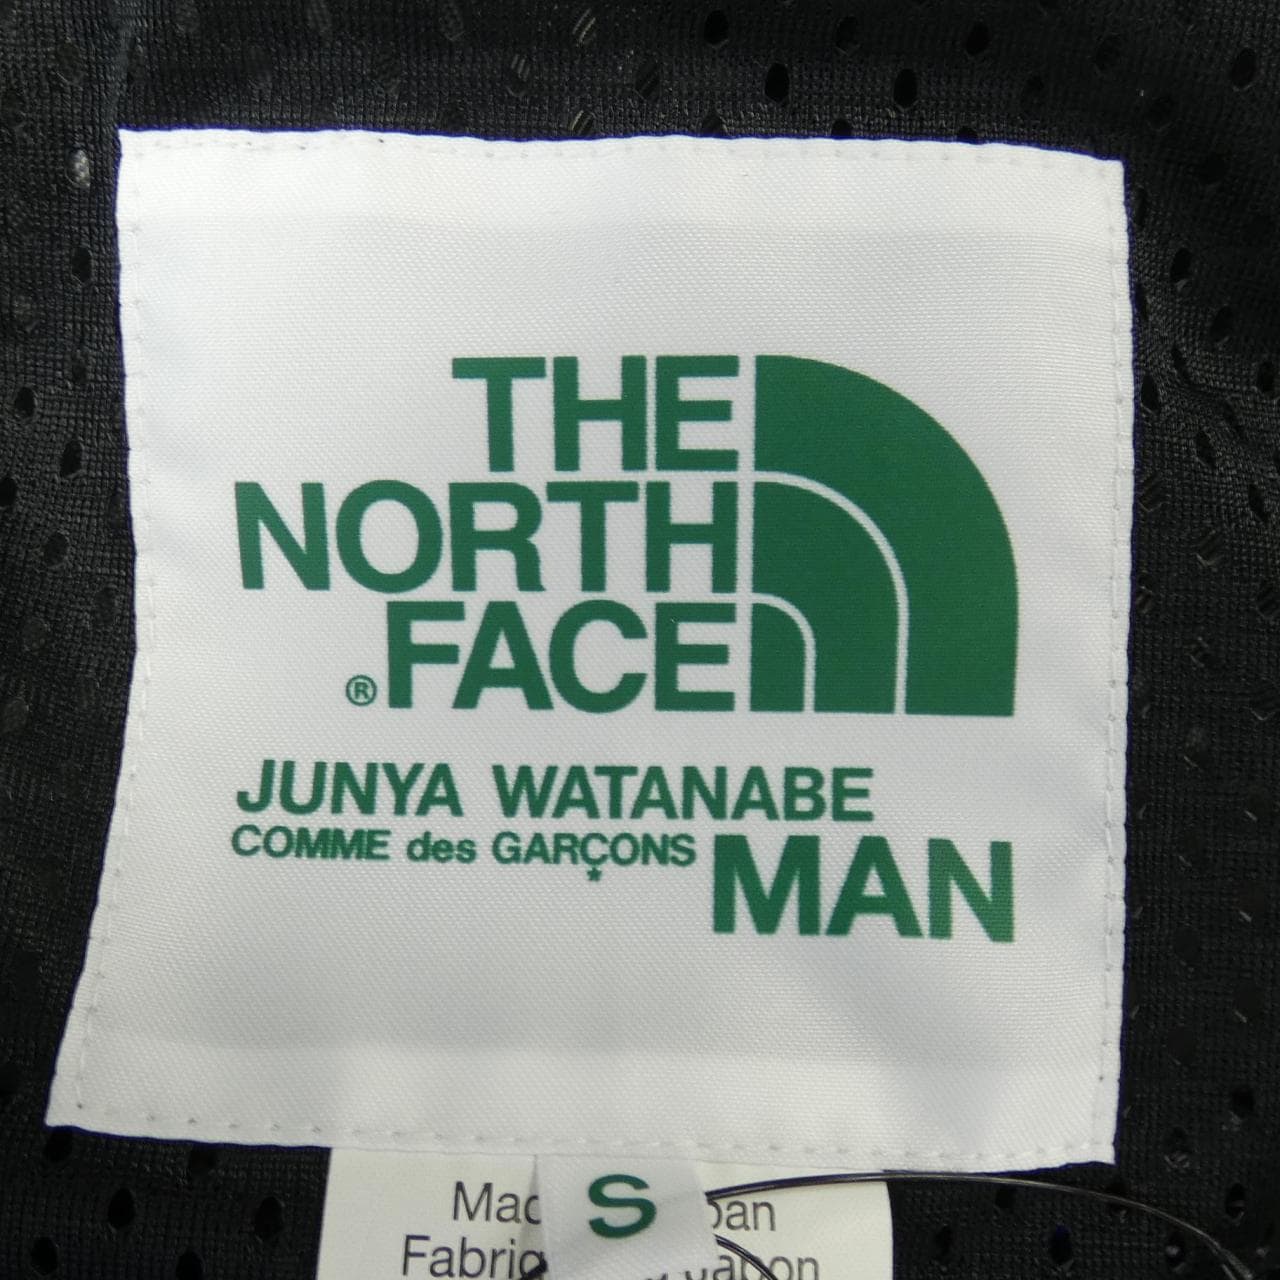 Junya Watanabeman JUNYA WATANABE MAN夾克衫